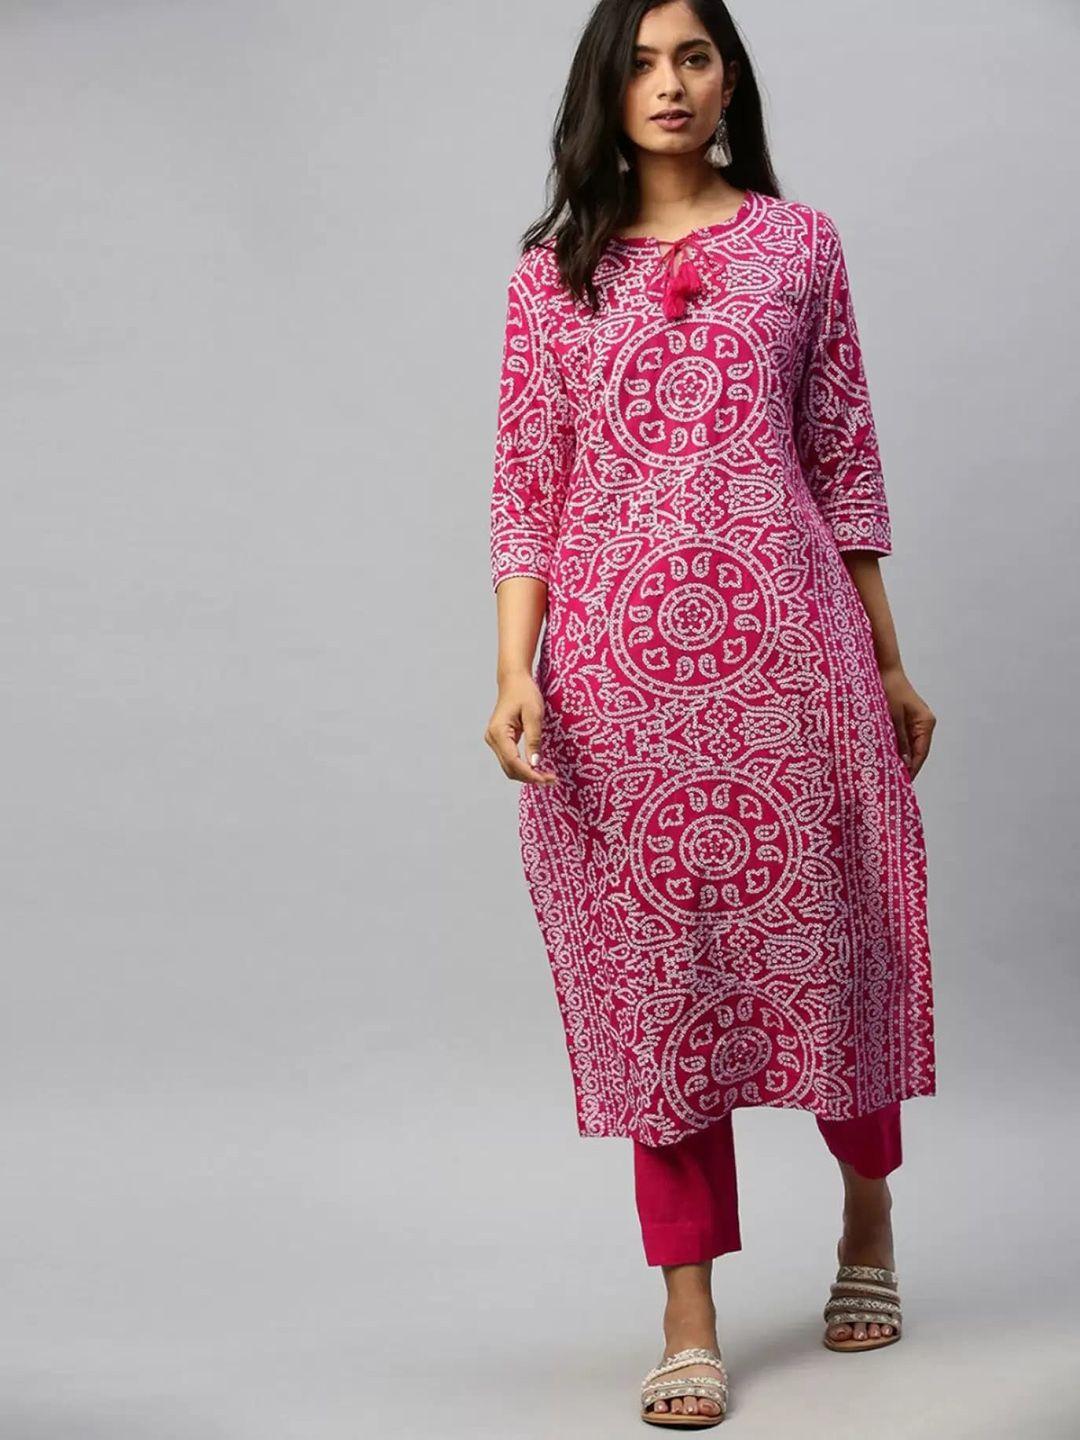 royal export women pink bandhani printed regular kurta with trousers